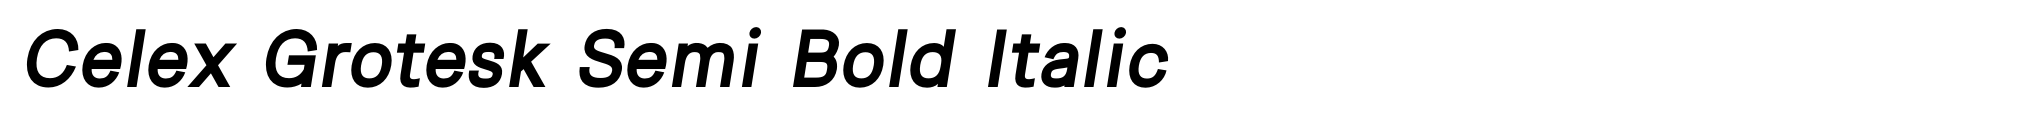 Celex Grotesk Semi Bold Italic image